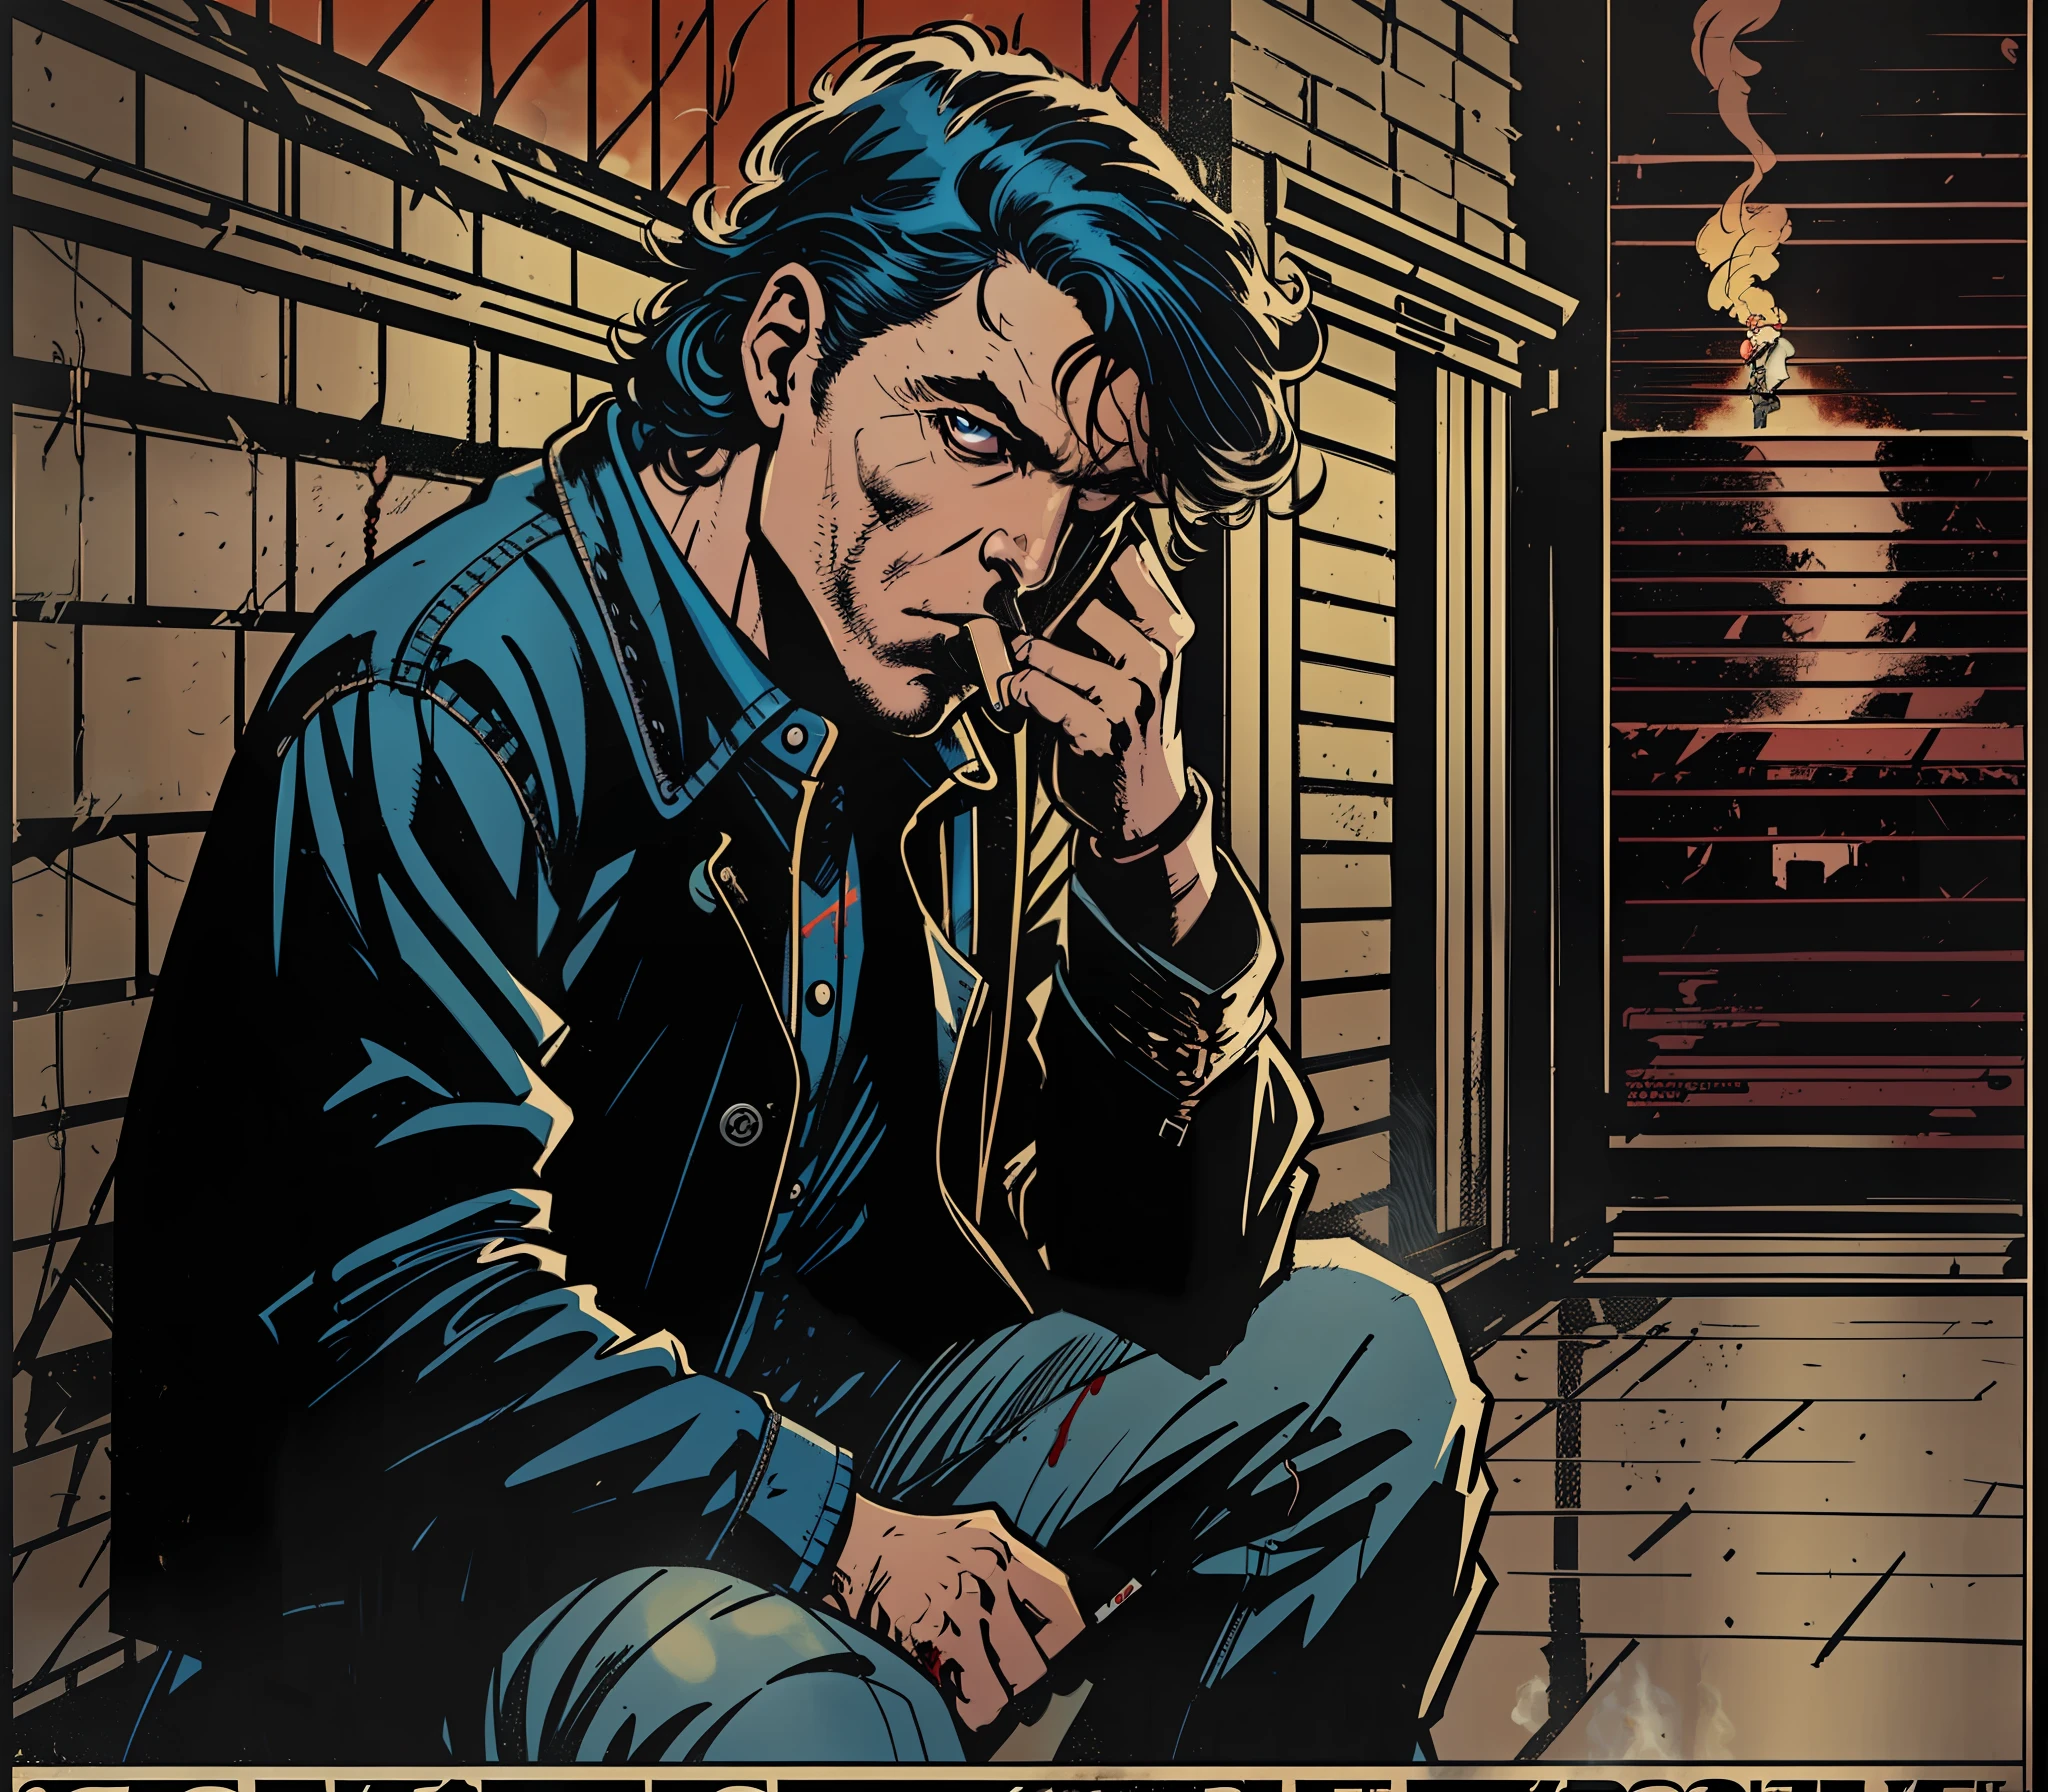 身穿黑色外套和牛仔裤的抑郁男子坐在黑暗的小巷里抽烟, 他的头发是黑色的，手臂上有血迹 ((((系列海报艺术)))